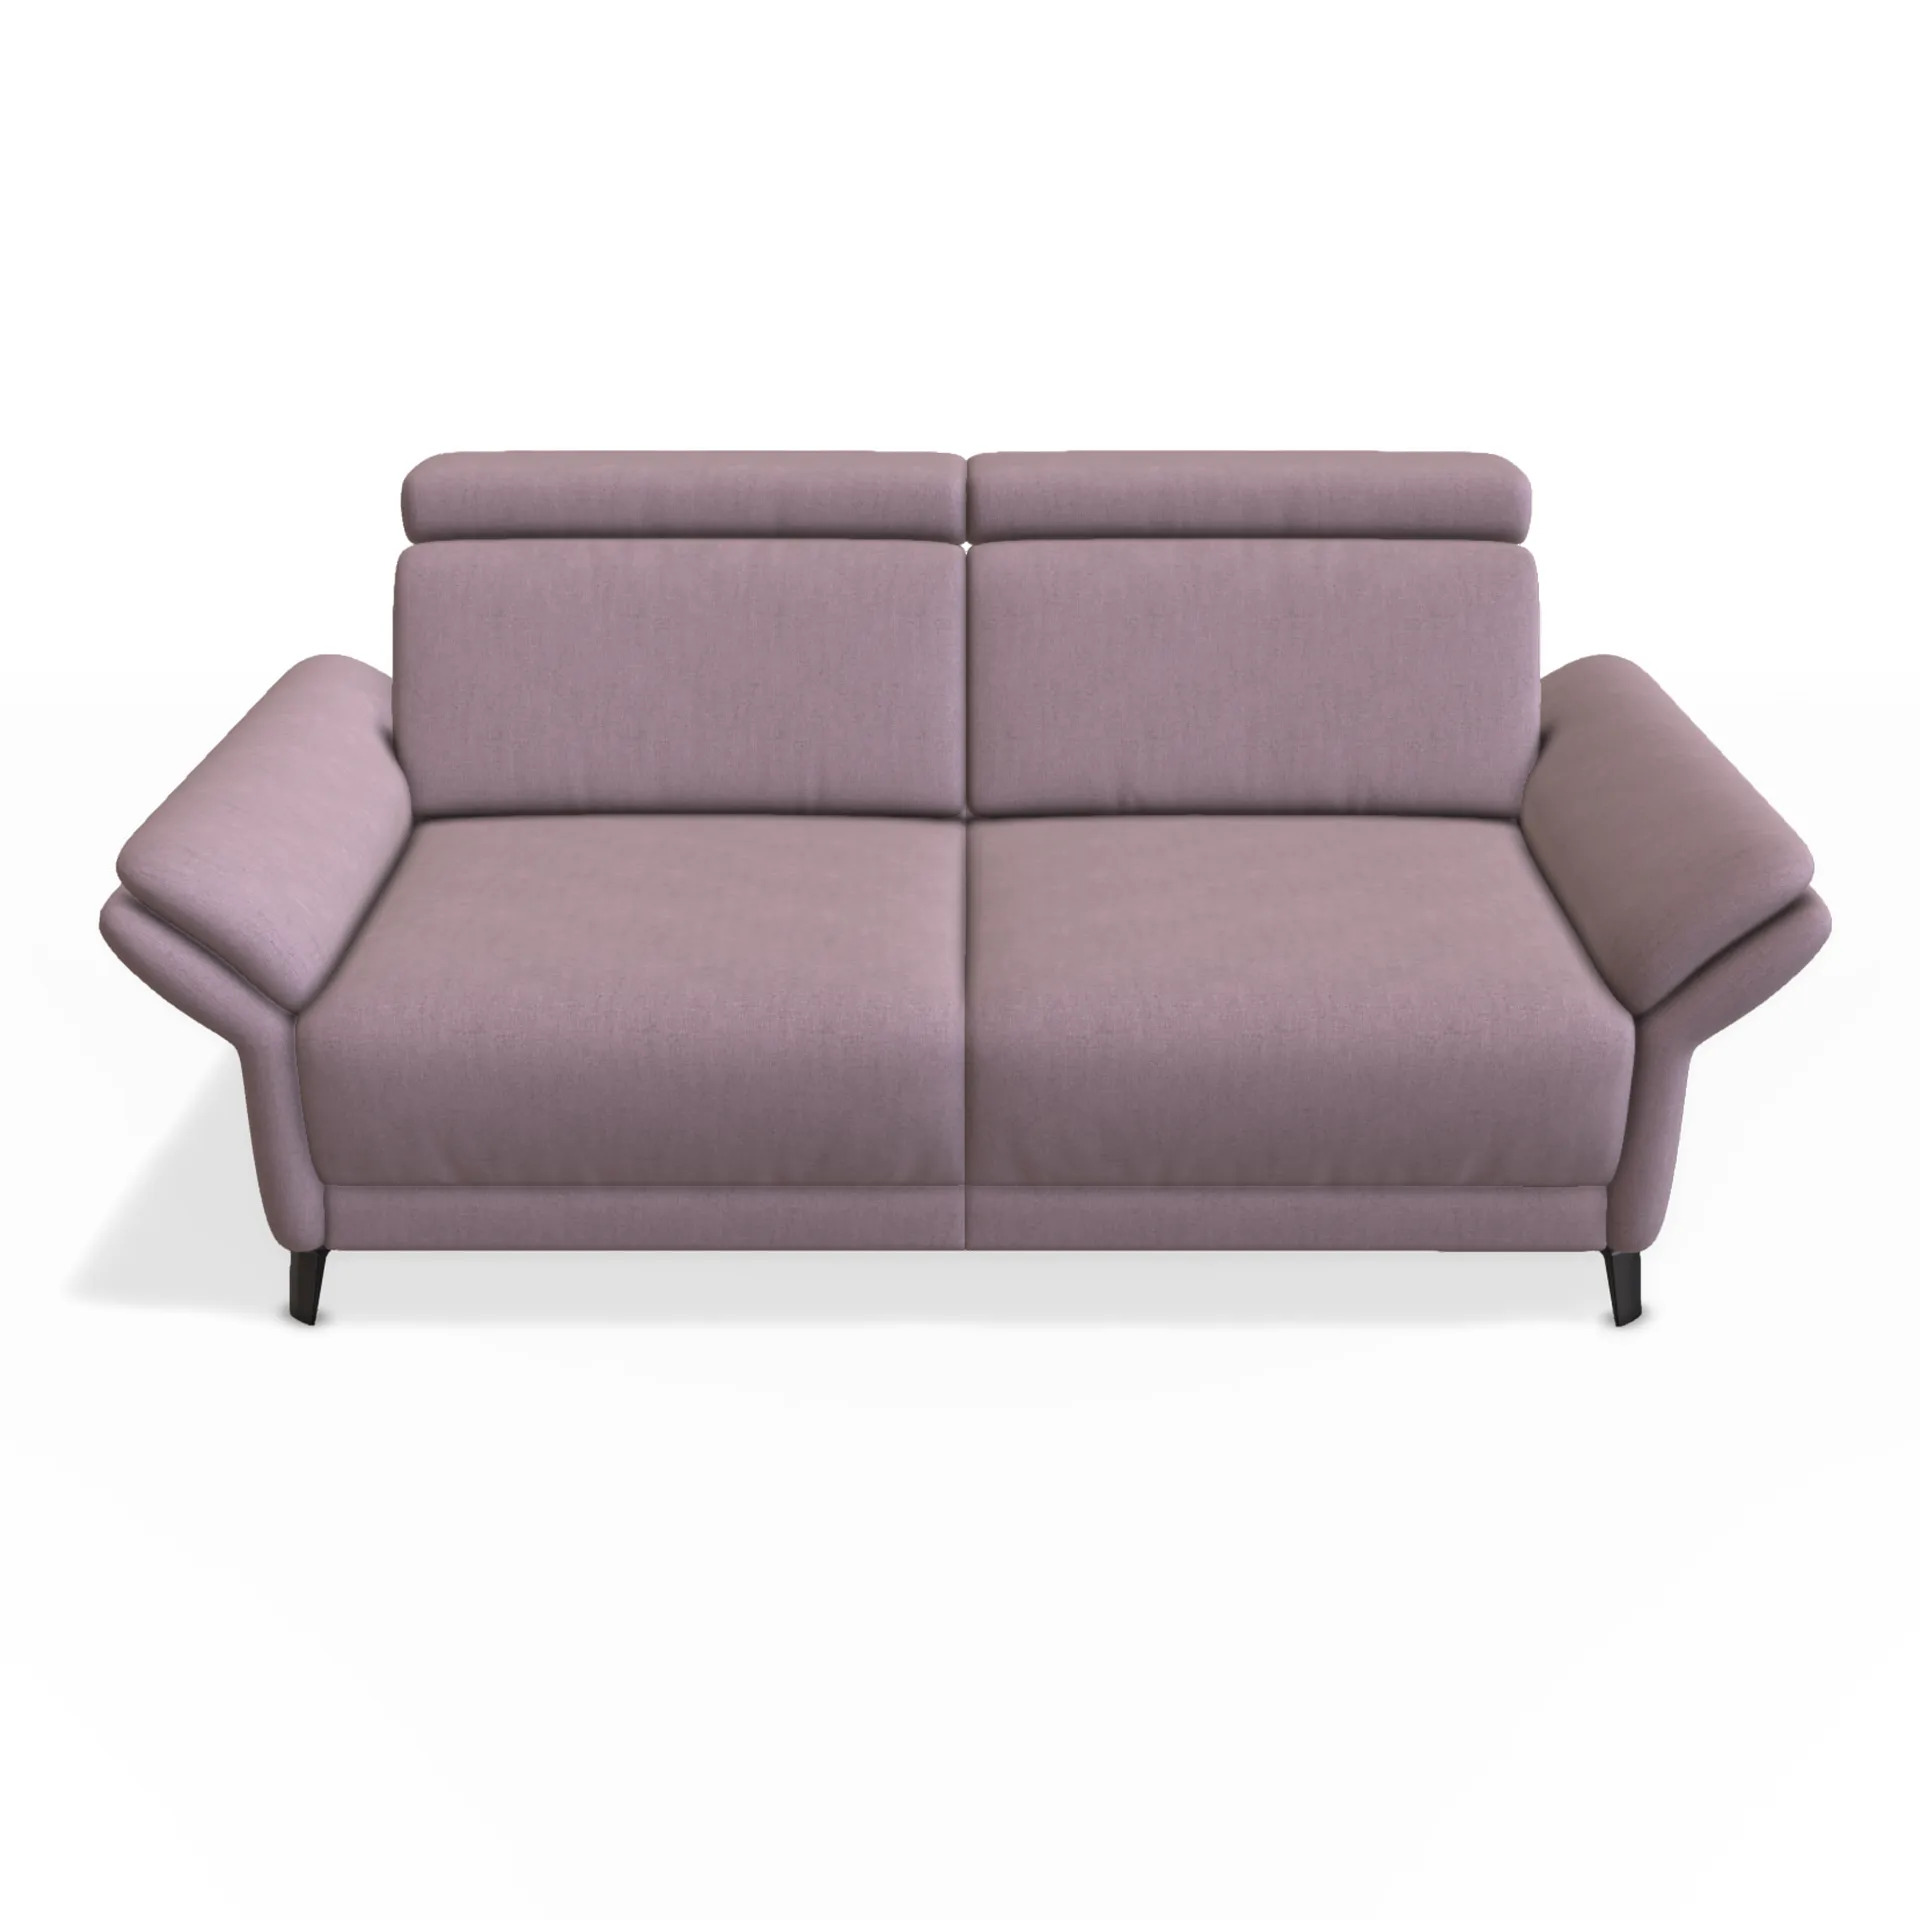 sofa 2,5 in strahlenden fliederfarbigen stoff